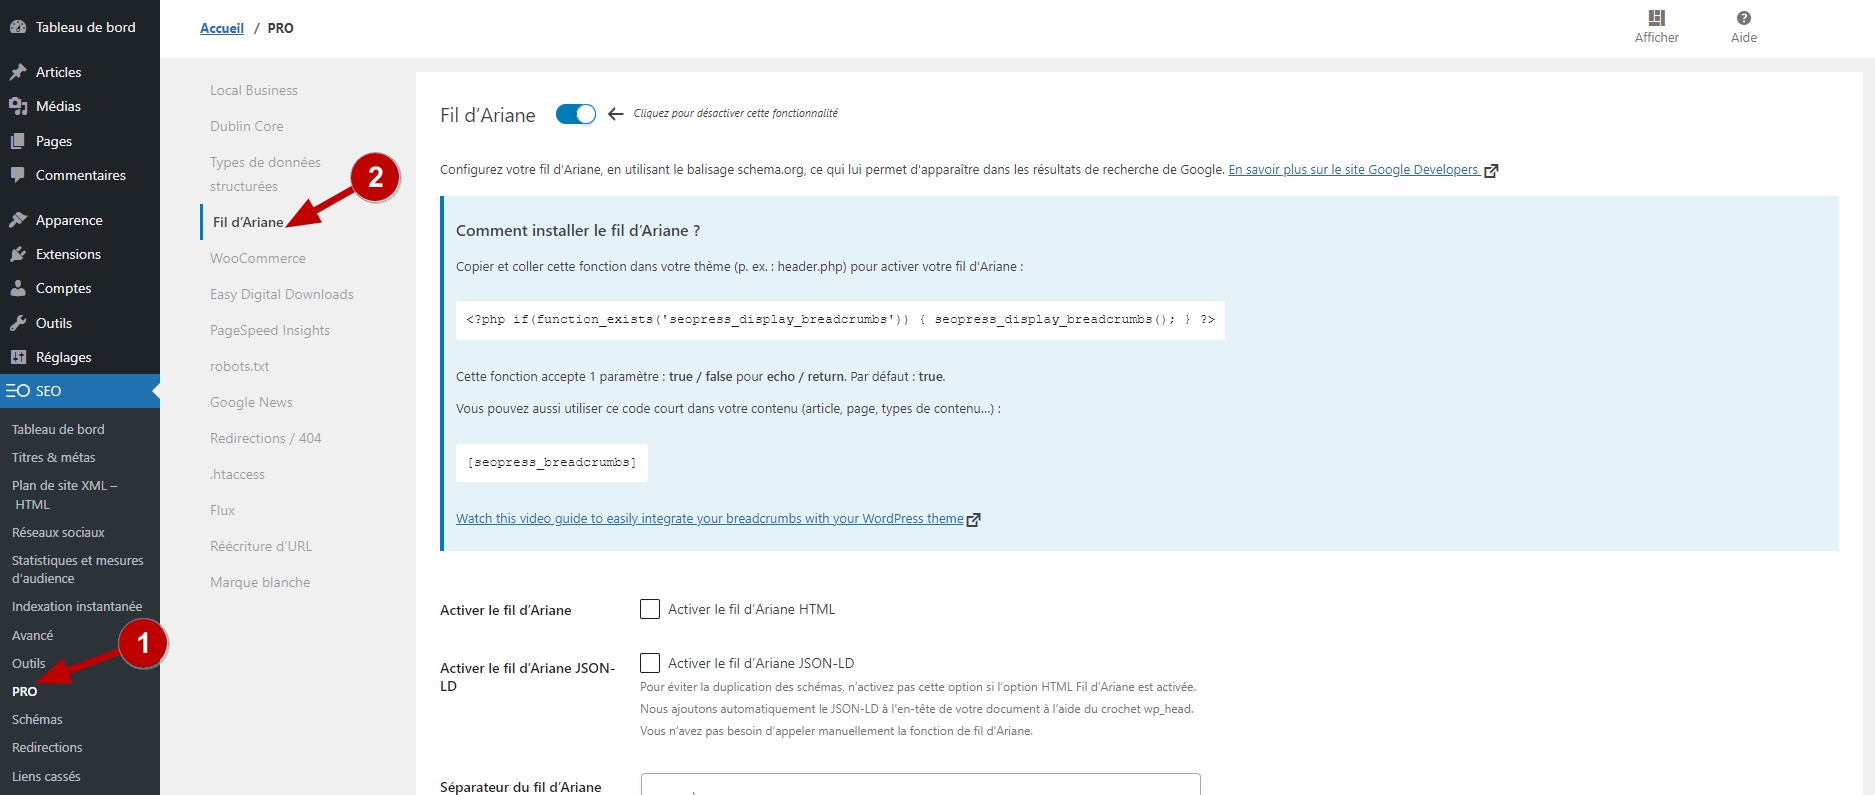 Intégration d'un fil d'Ariane sur WordPress avec l'extension SEOPress.